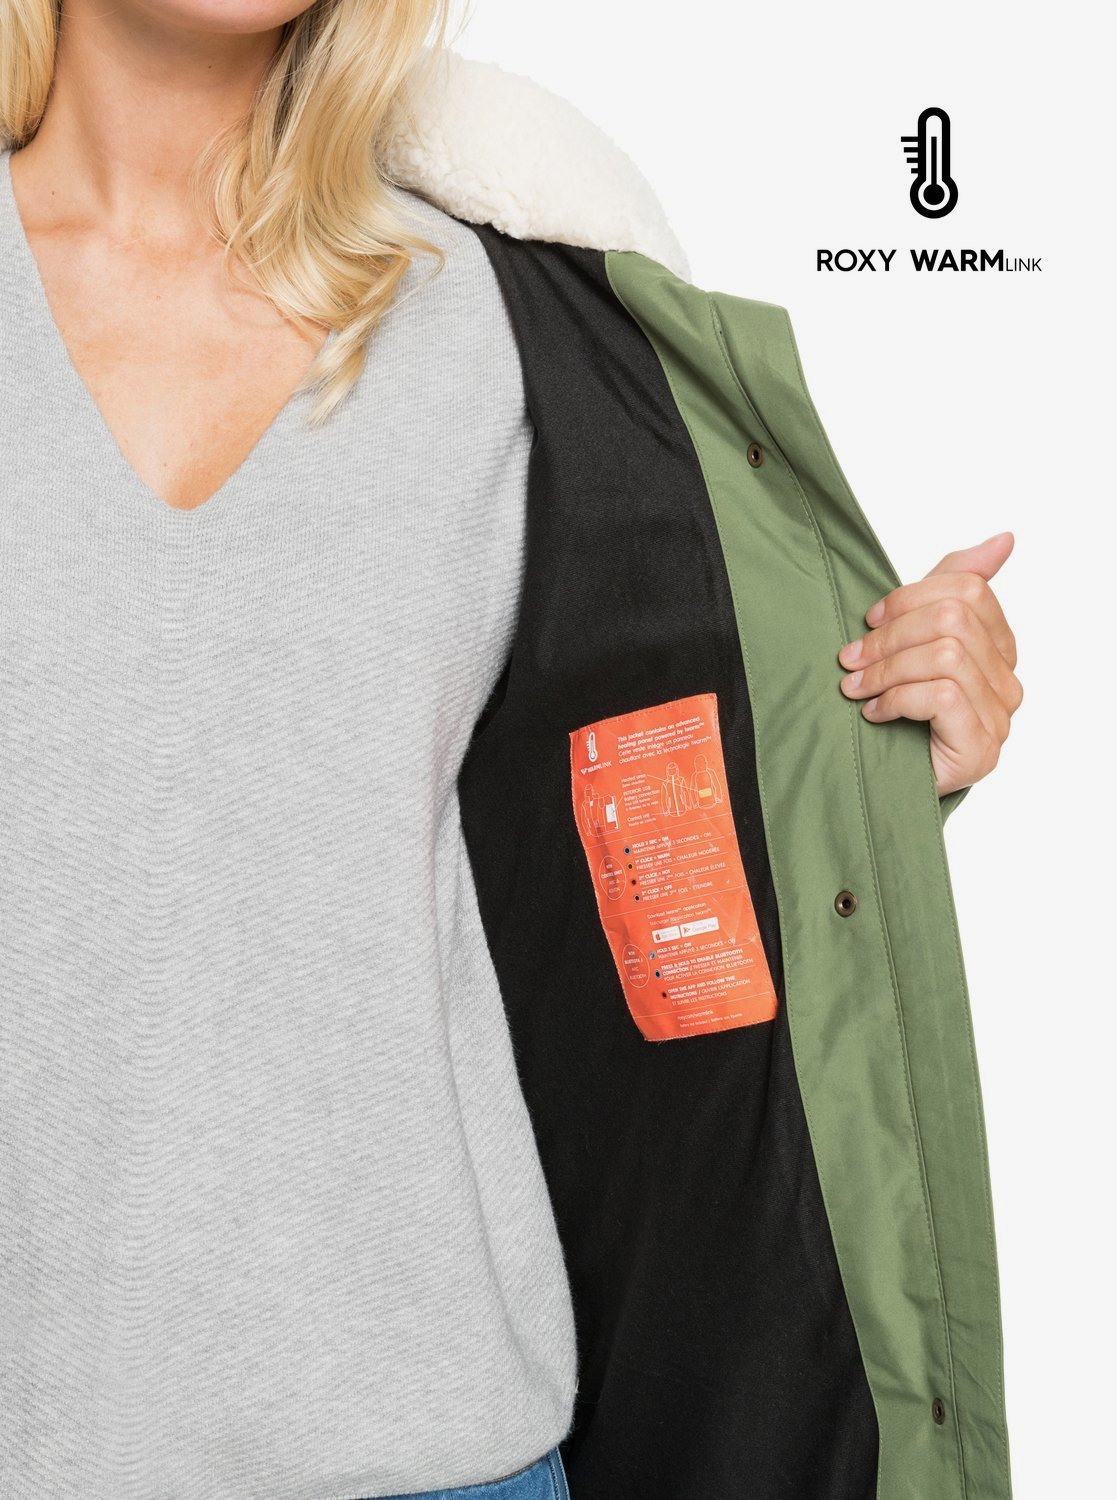 Roxy Ellie Plus Waterproof Longline Puffer Jacket - Women's - image 4 of 5